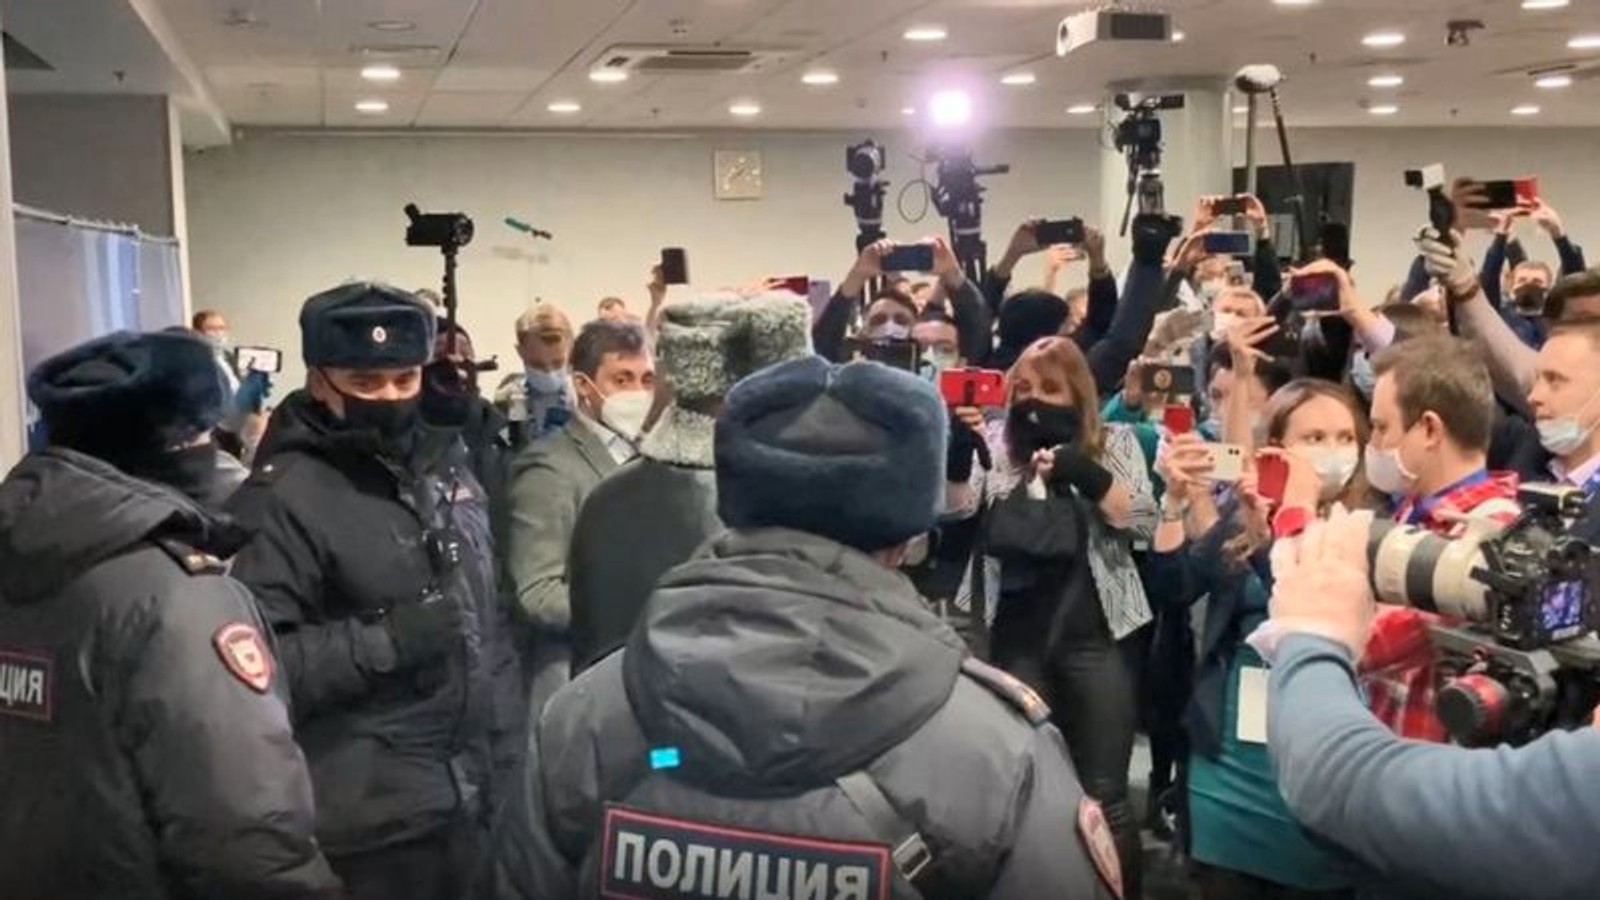 Затриманих на форумі «Муніципальна Росія» опитує прокуратура і центр «Е». В деякі ОВС не пускають адвокатів